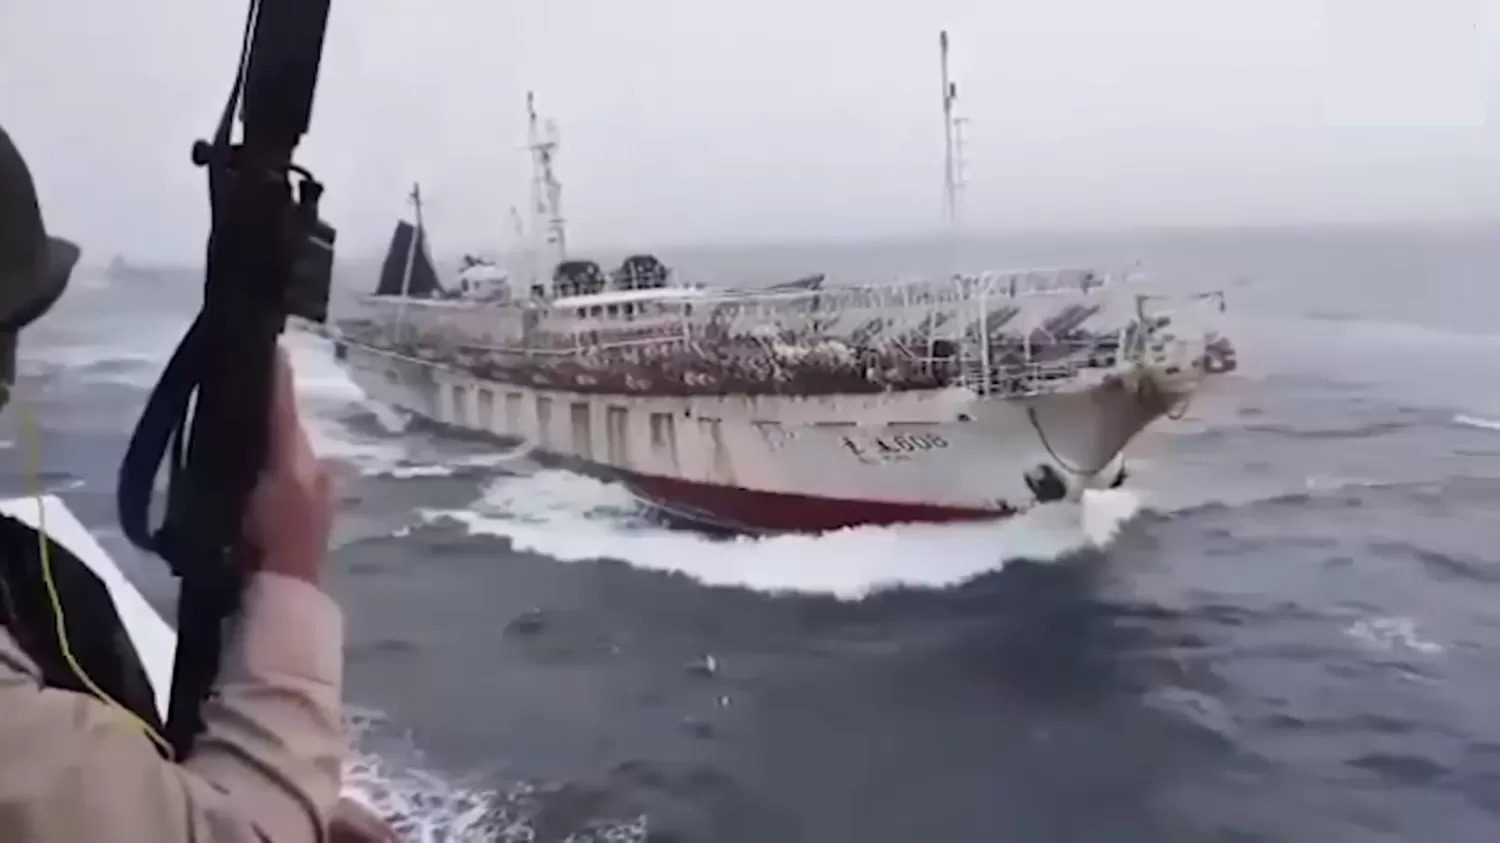 Prefectura y su persecucióa a un buque de China que pescaba ilegalmente en aguas argentinas